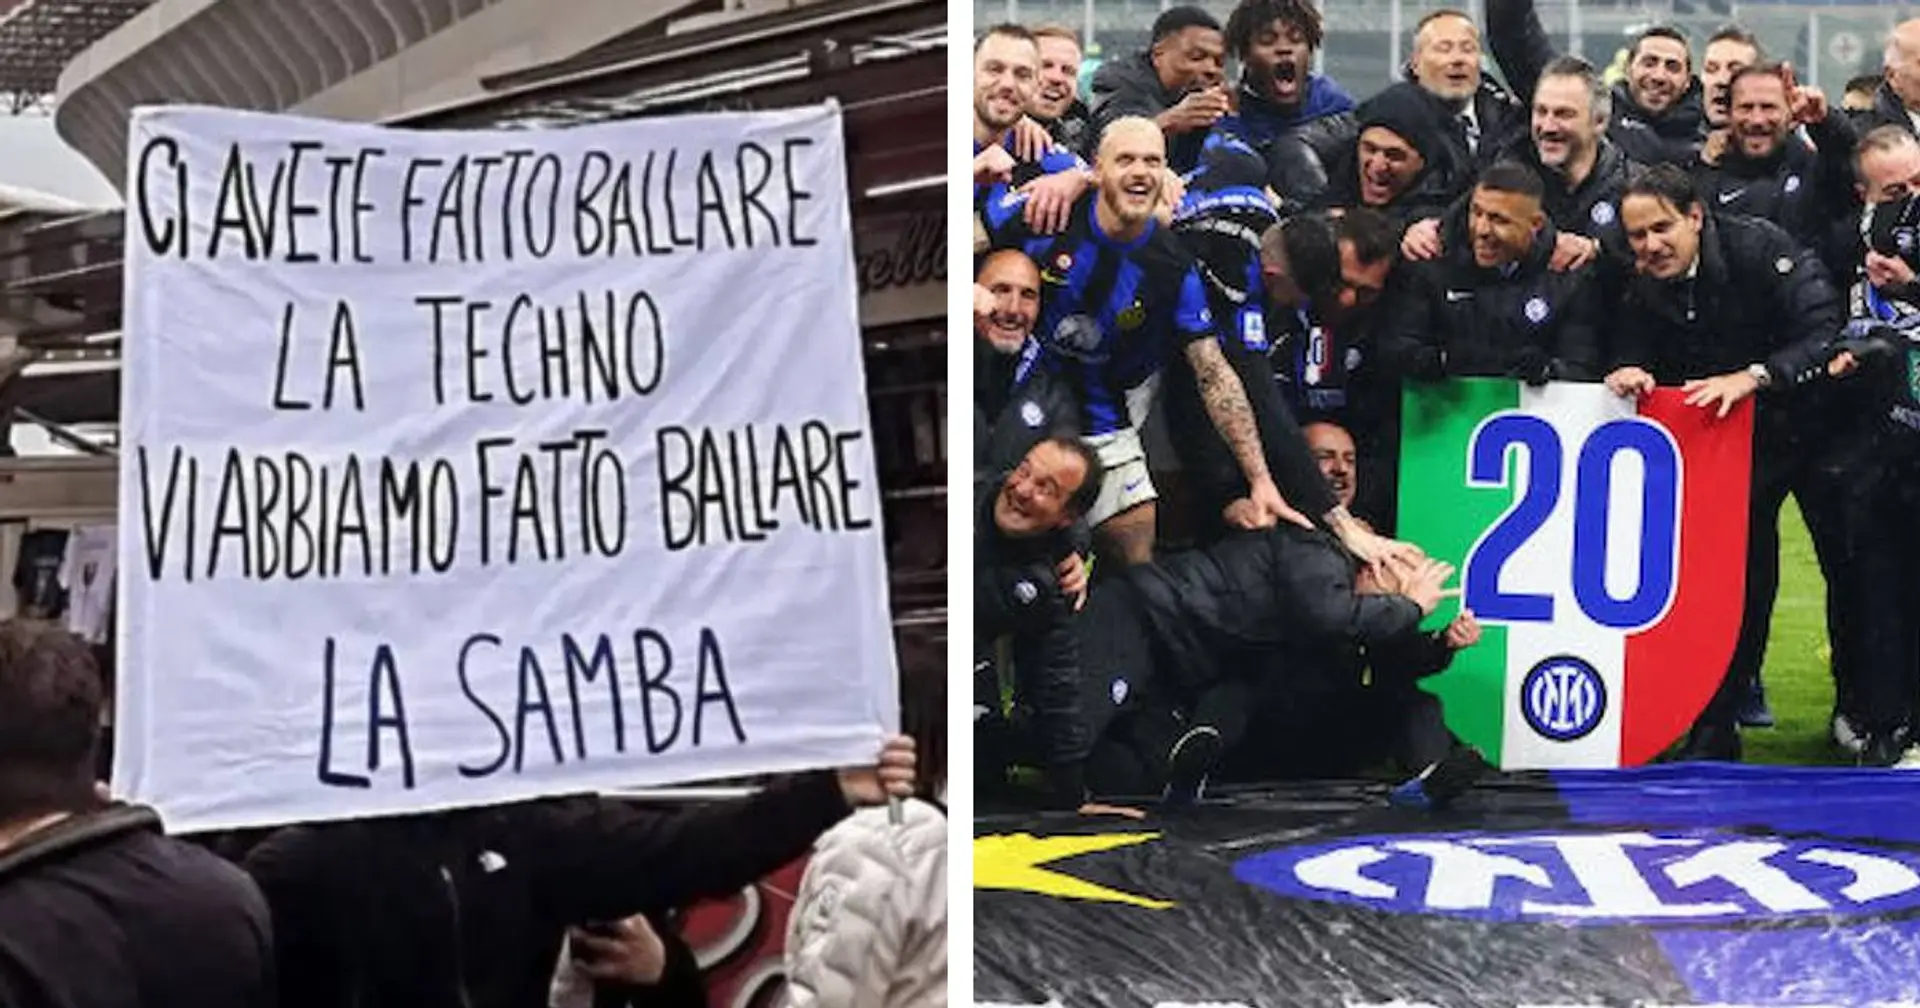 “Ci avete fatto ballare la Techno, noi la Samba”: la risposta di un tifoso dell'Inter dopo la provocazione del Milan  